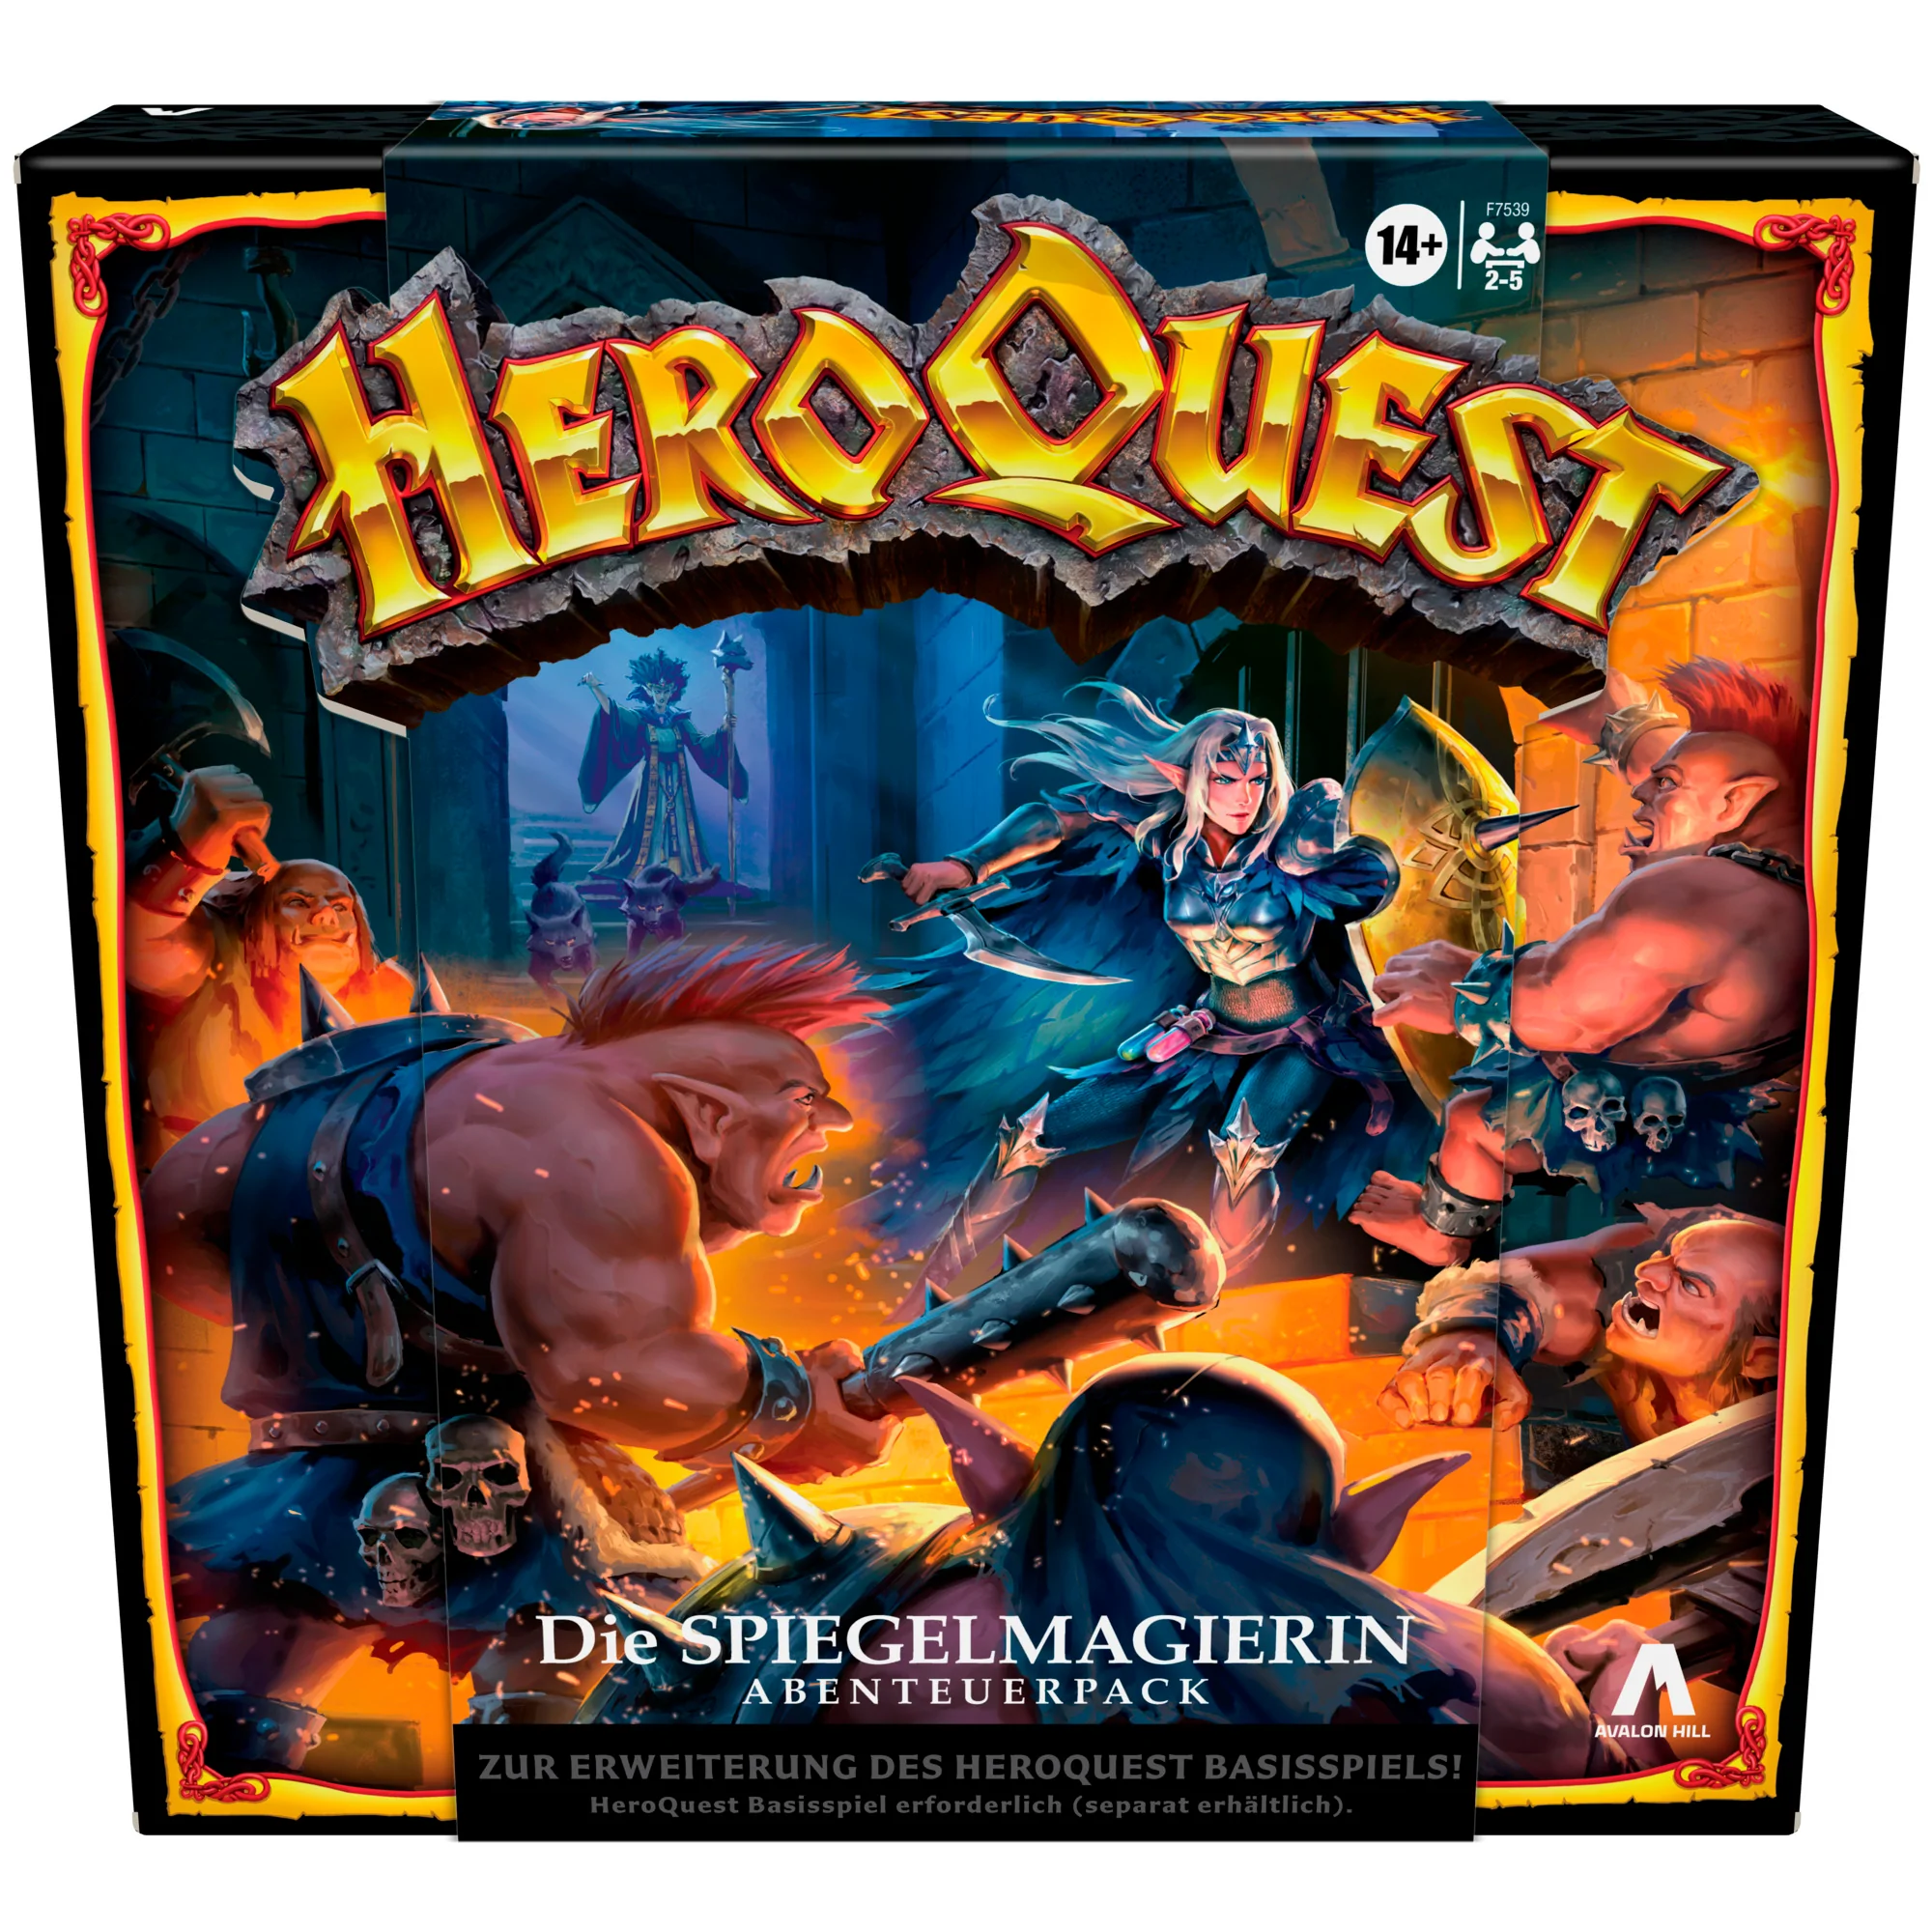 Heroquest - Avalon Hill HeroQuest Die Spiegelmagierin Abenteuerpack - DE F75391000 5010994203276